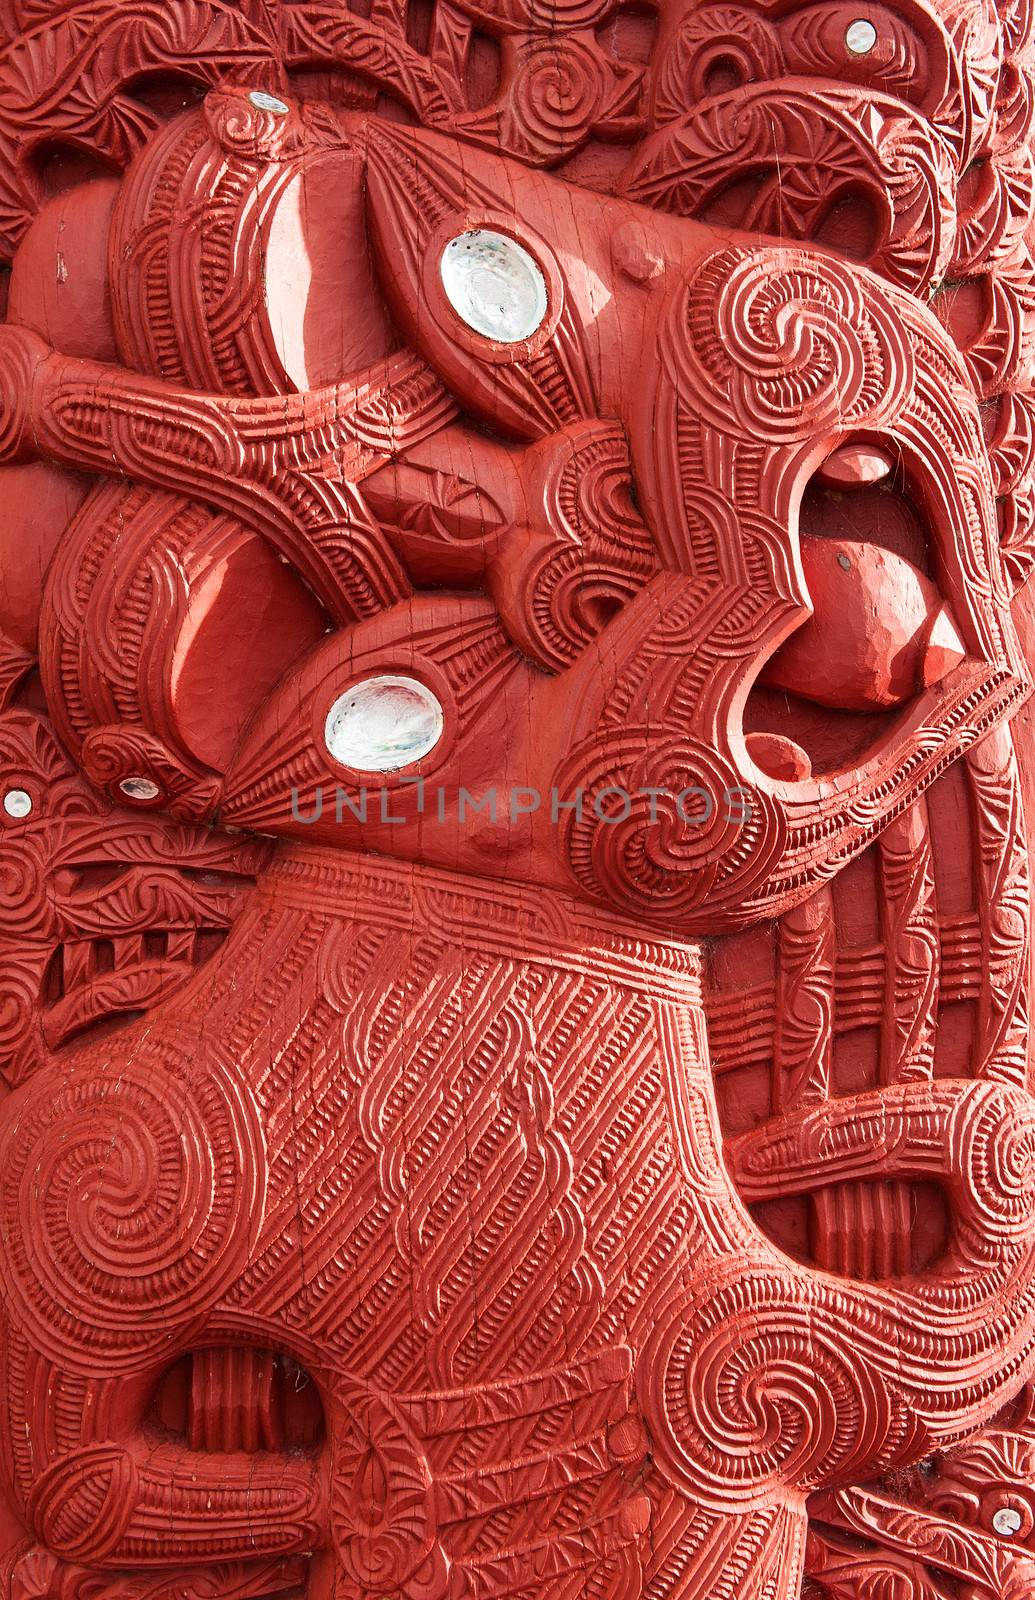  Beautiful maori carving. Detail of the historic meeting house Tamatekapua, Rotorua, New Zealand